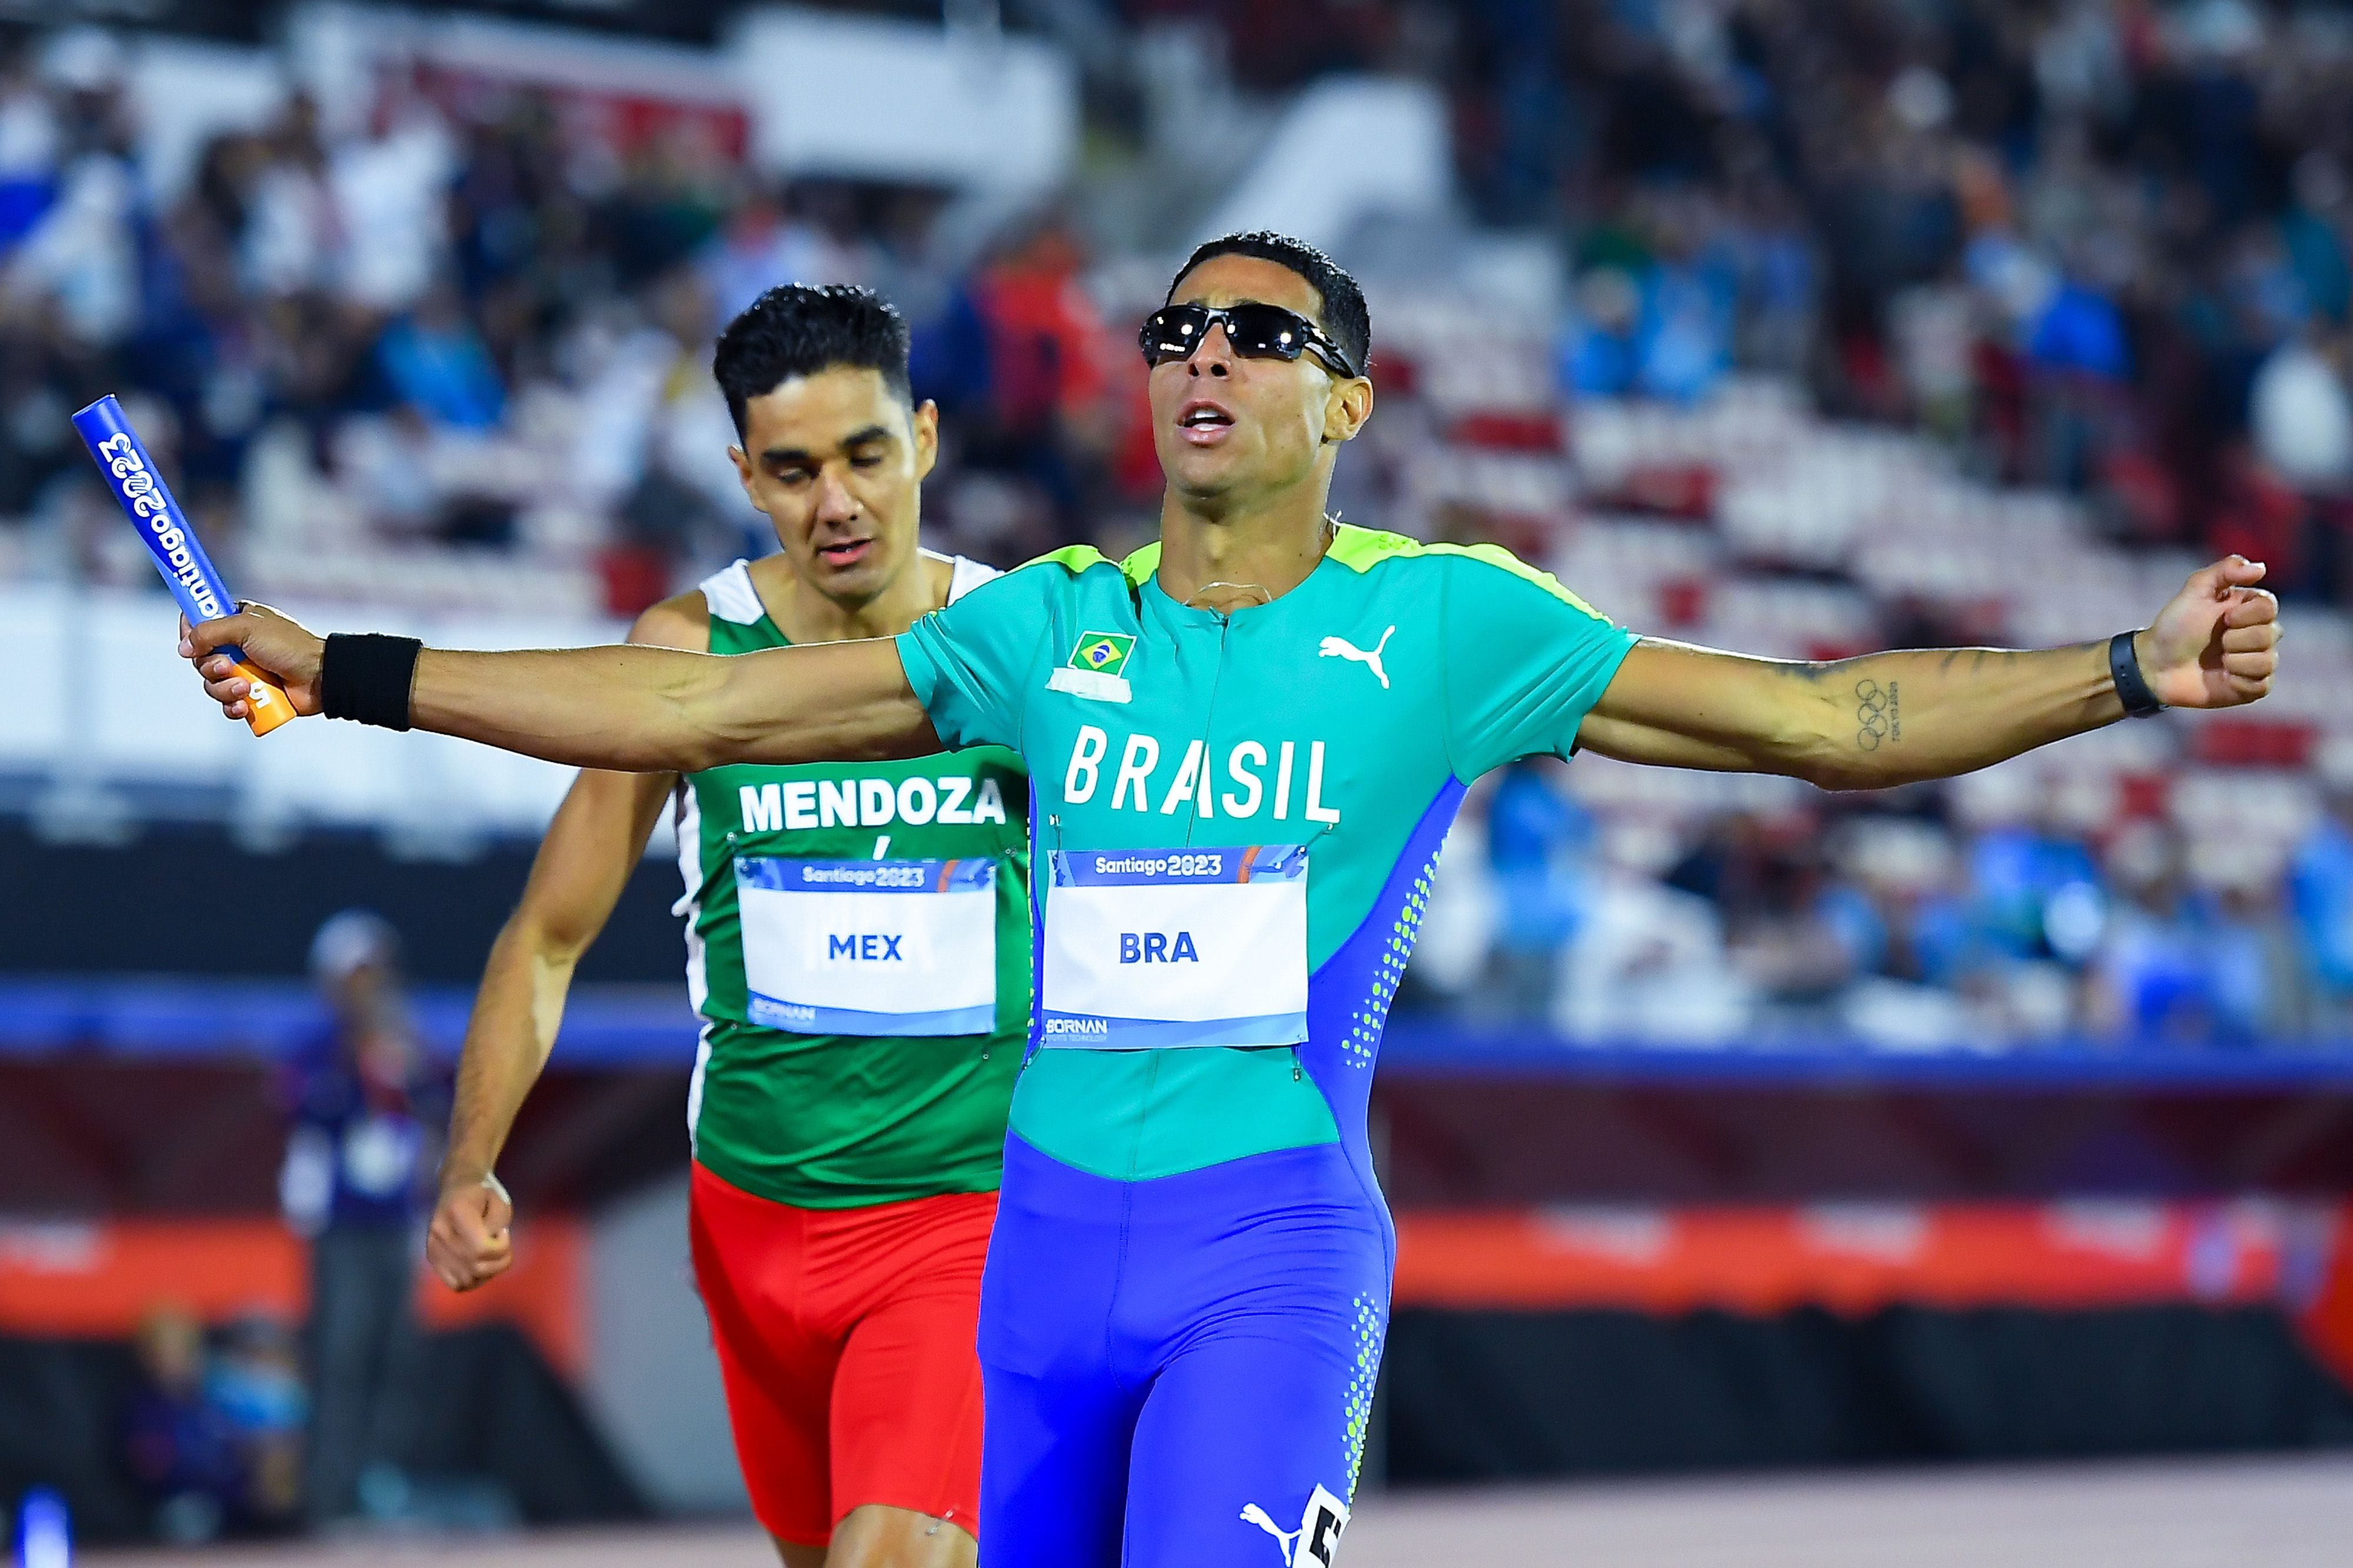 Atletismo es una de las disciplinas con más participantes en los juegos Olímpicos. (Foto: Mexsport)